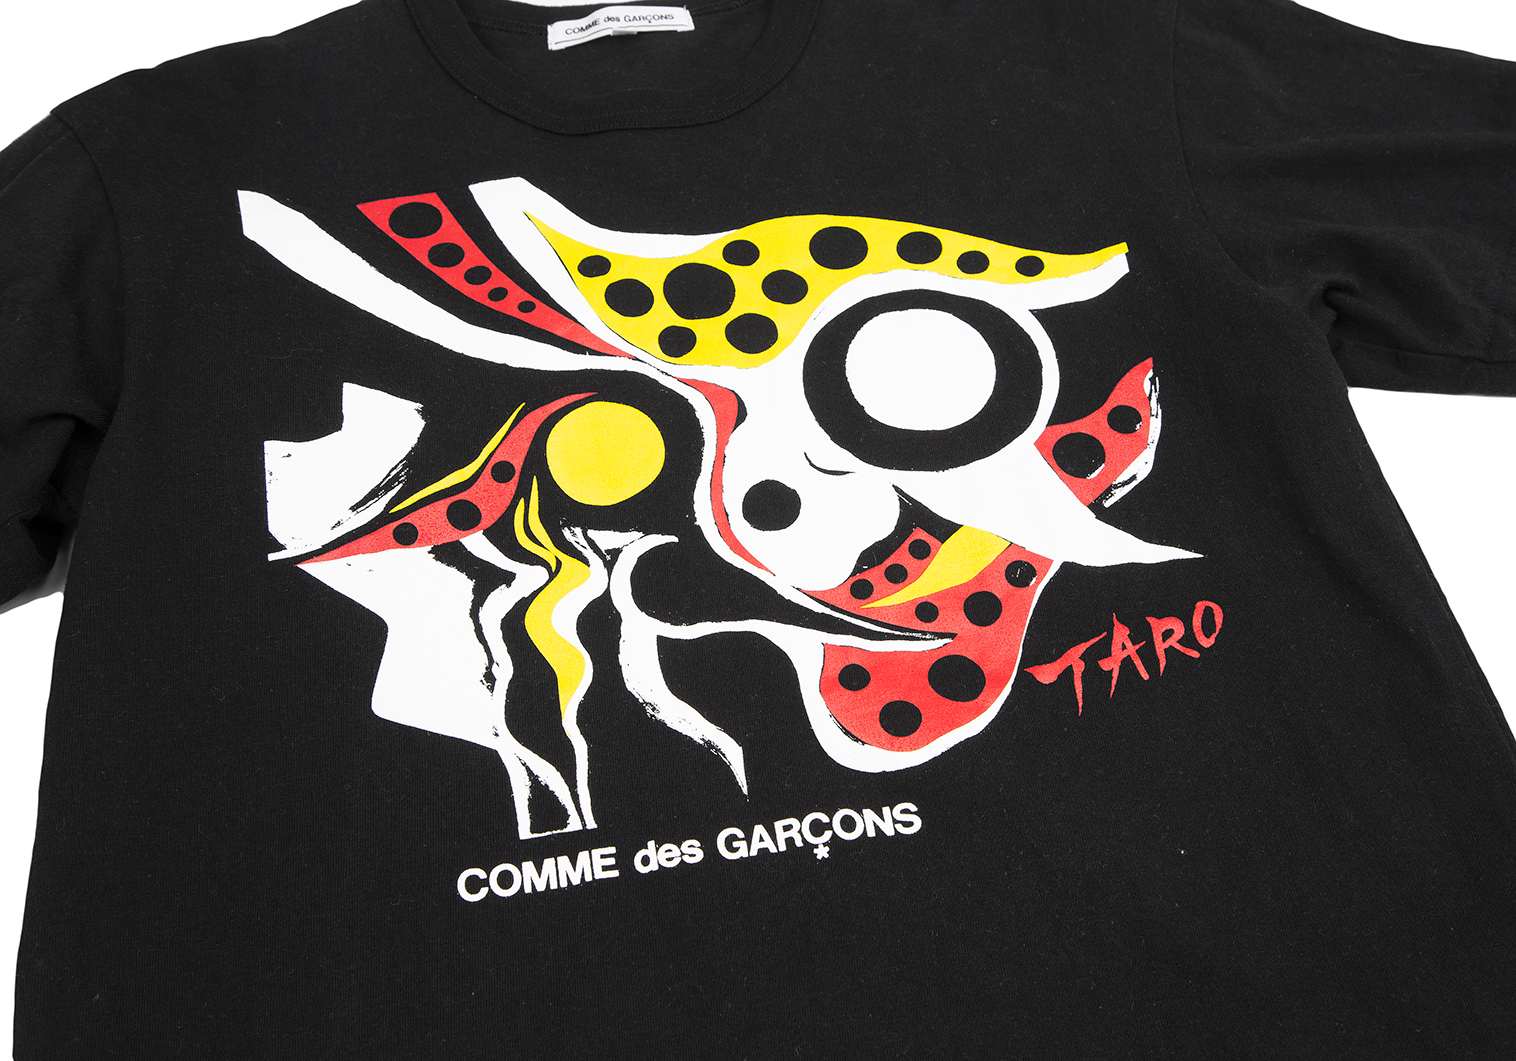 岡本太郎× COMME des GARCONS コラボTシャツメンズ